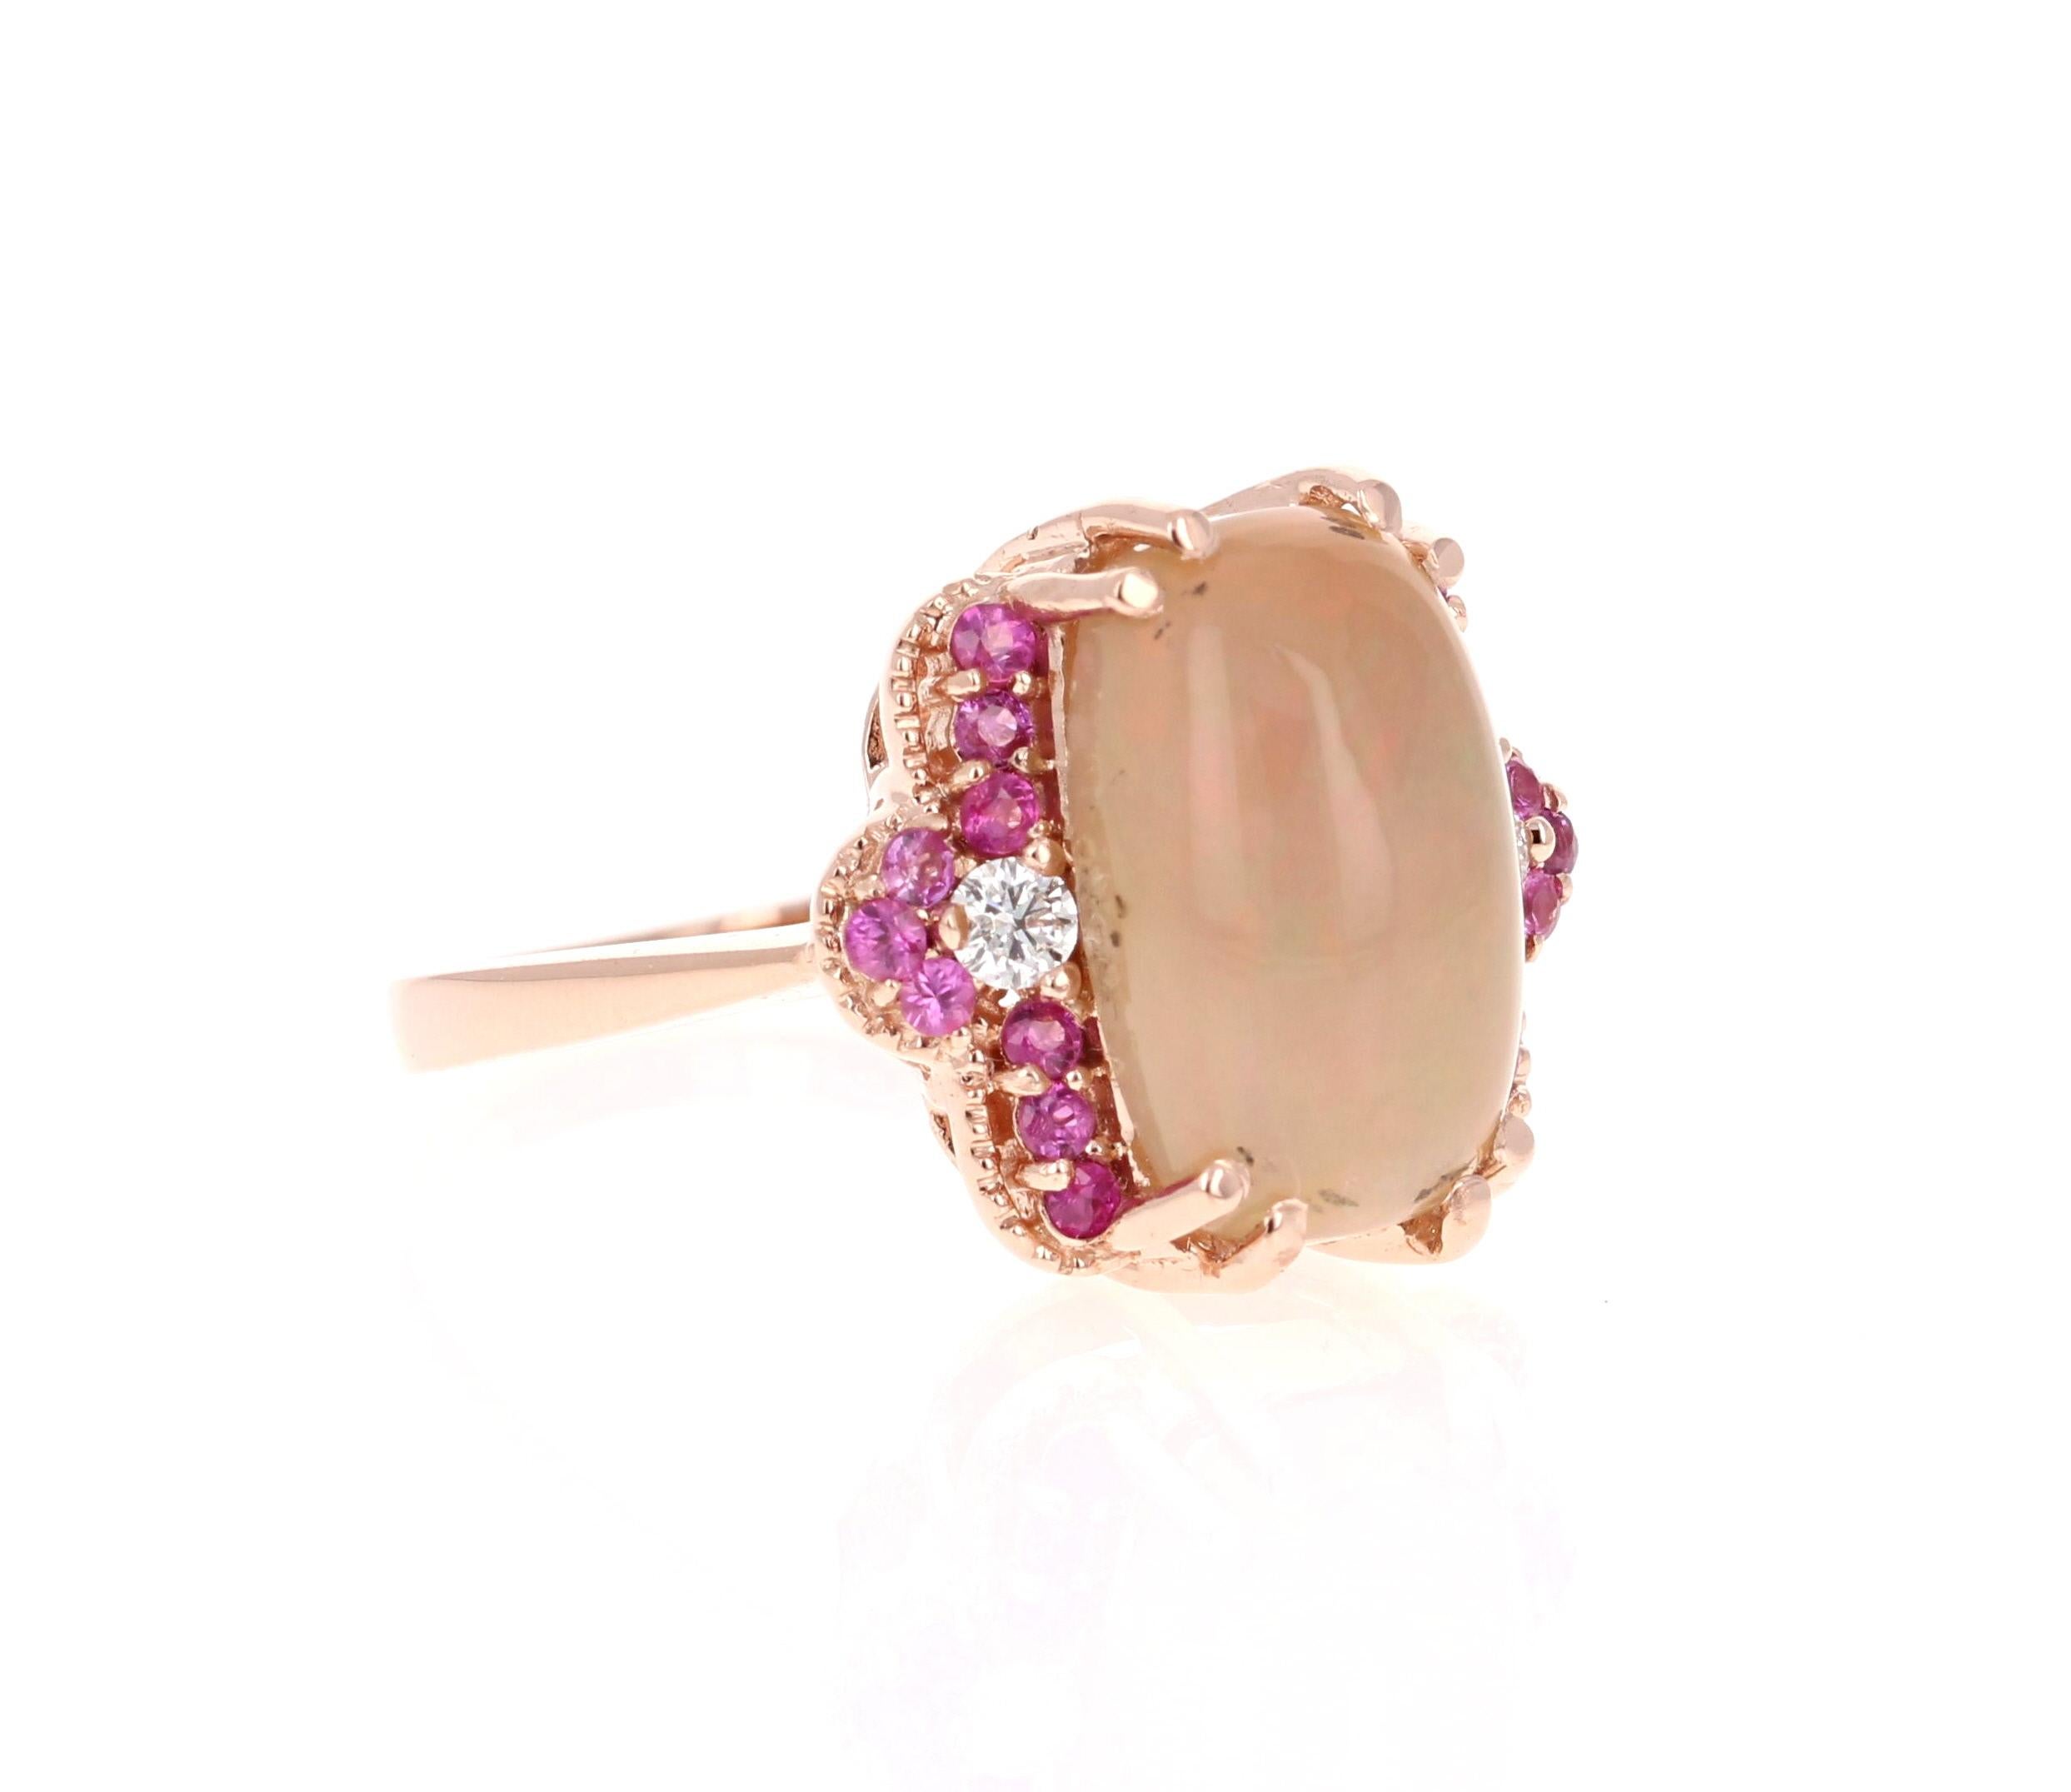 3.62 Karat Ovalschliff Opal Diamant Rose Gold Ring

Der Oval Cut Opal in diesem Ring wiegt 3,19 Karat und die Maße des Opals sind 9 mm x 14 mm. Der Opal ist umgeben von 2 Diamanten im Rundschliff mit einem Gewicht von 0,12 Karat und 18 rosa Saphiren